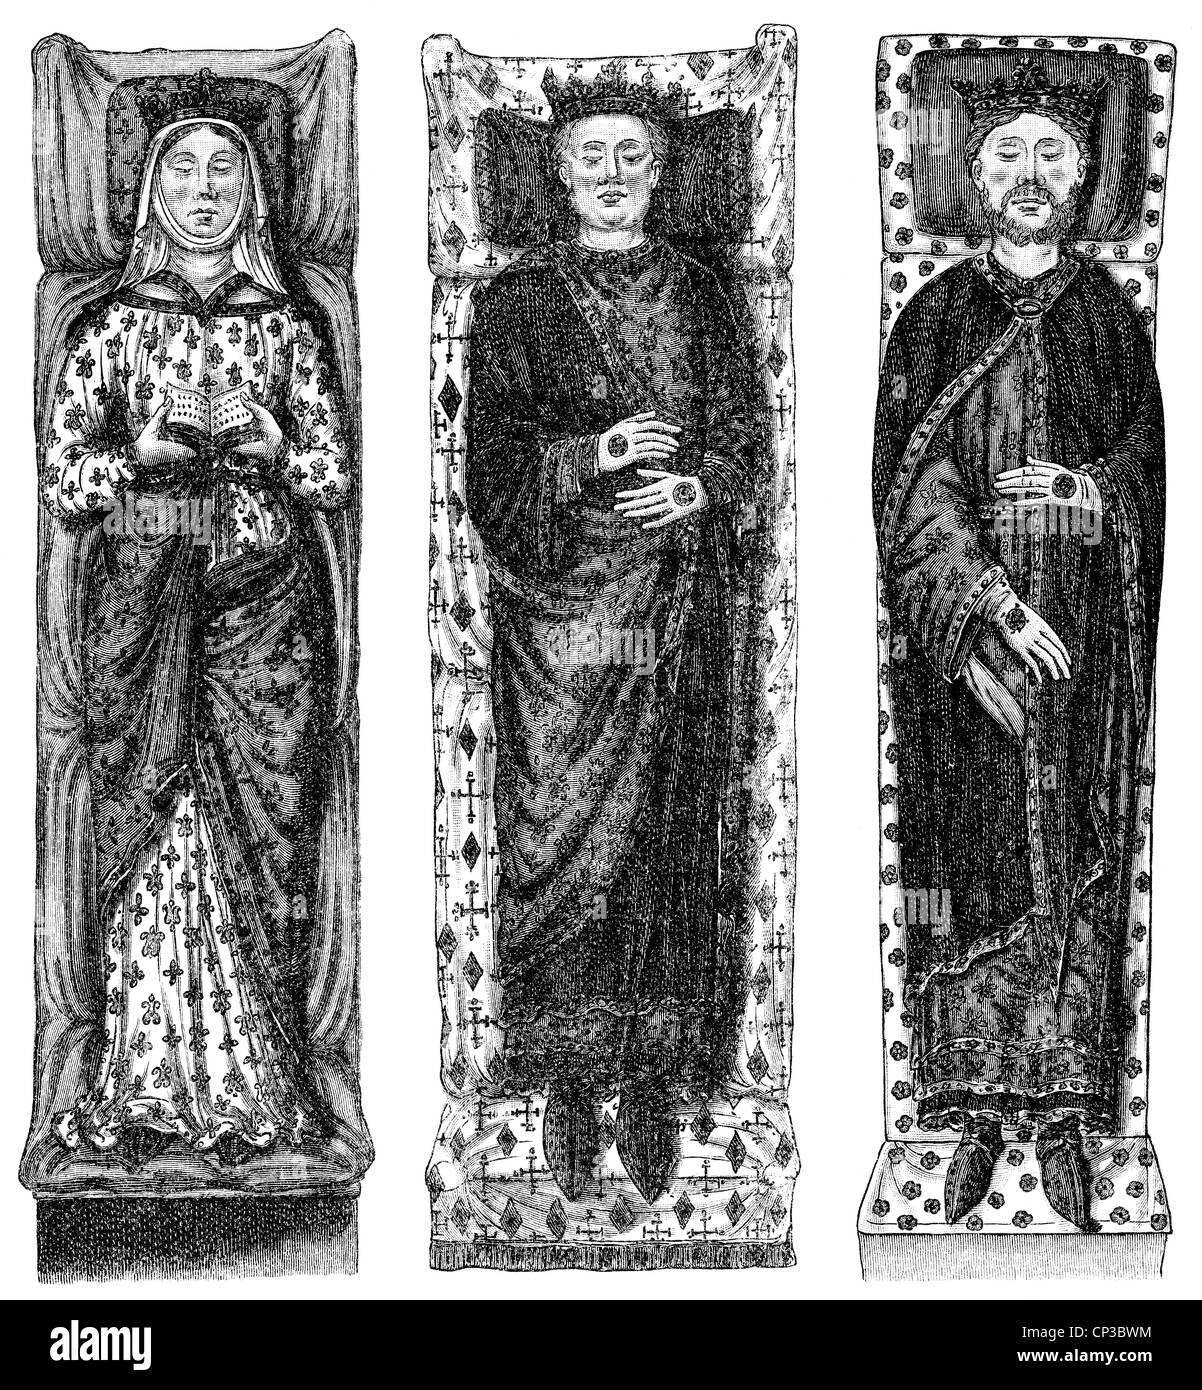 Tombe de sculptures, d'Aliénor d'Aquitaine, Henri II d'Angleterre et Richard Coeur de Lion, l'abbaye de Fontevraud, Abbaye royale de Fontevraud Banque D'Images